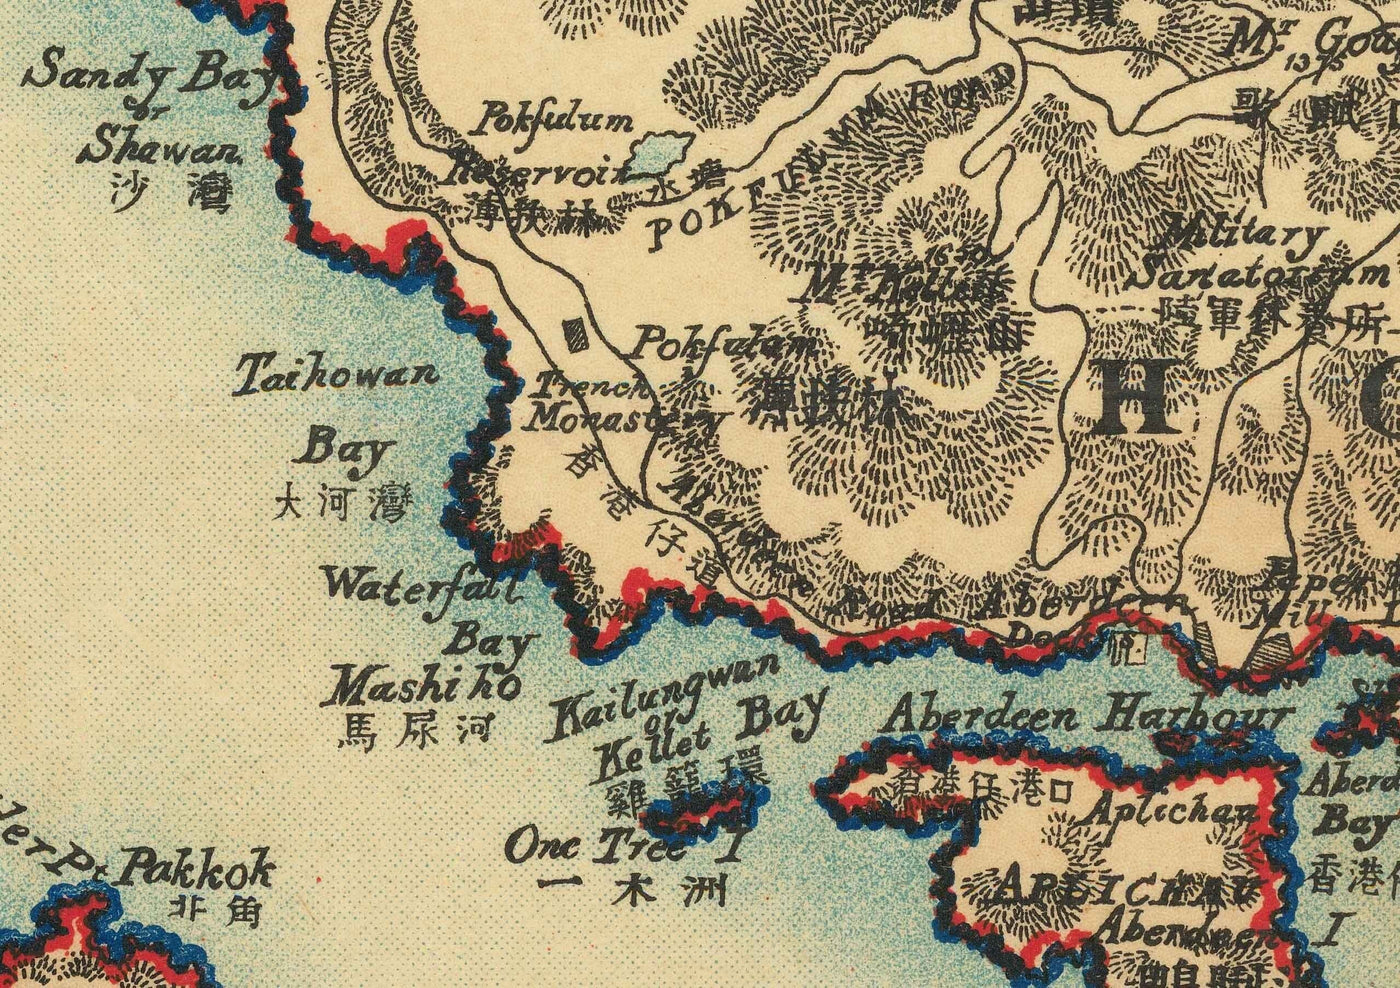 Ancienne carte de Hong Kong, 1924 par Sung Chun Wa - Central, Kowloon, Causeway, Victoria Harbour, îles, montagnes, Lamma